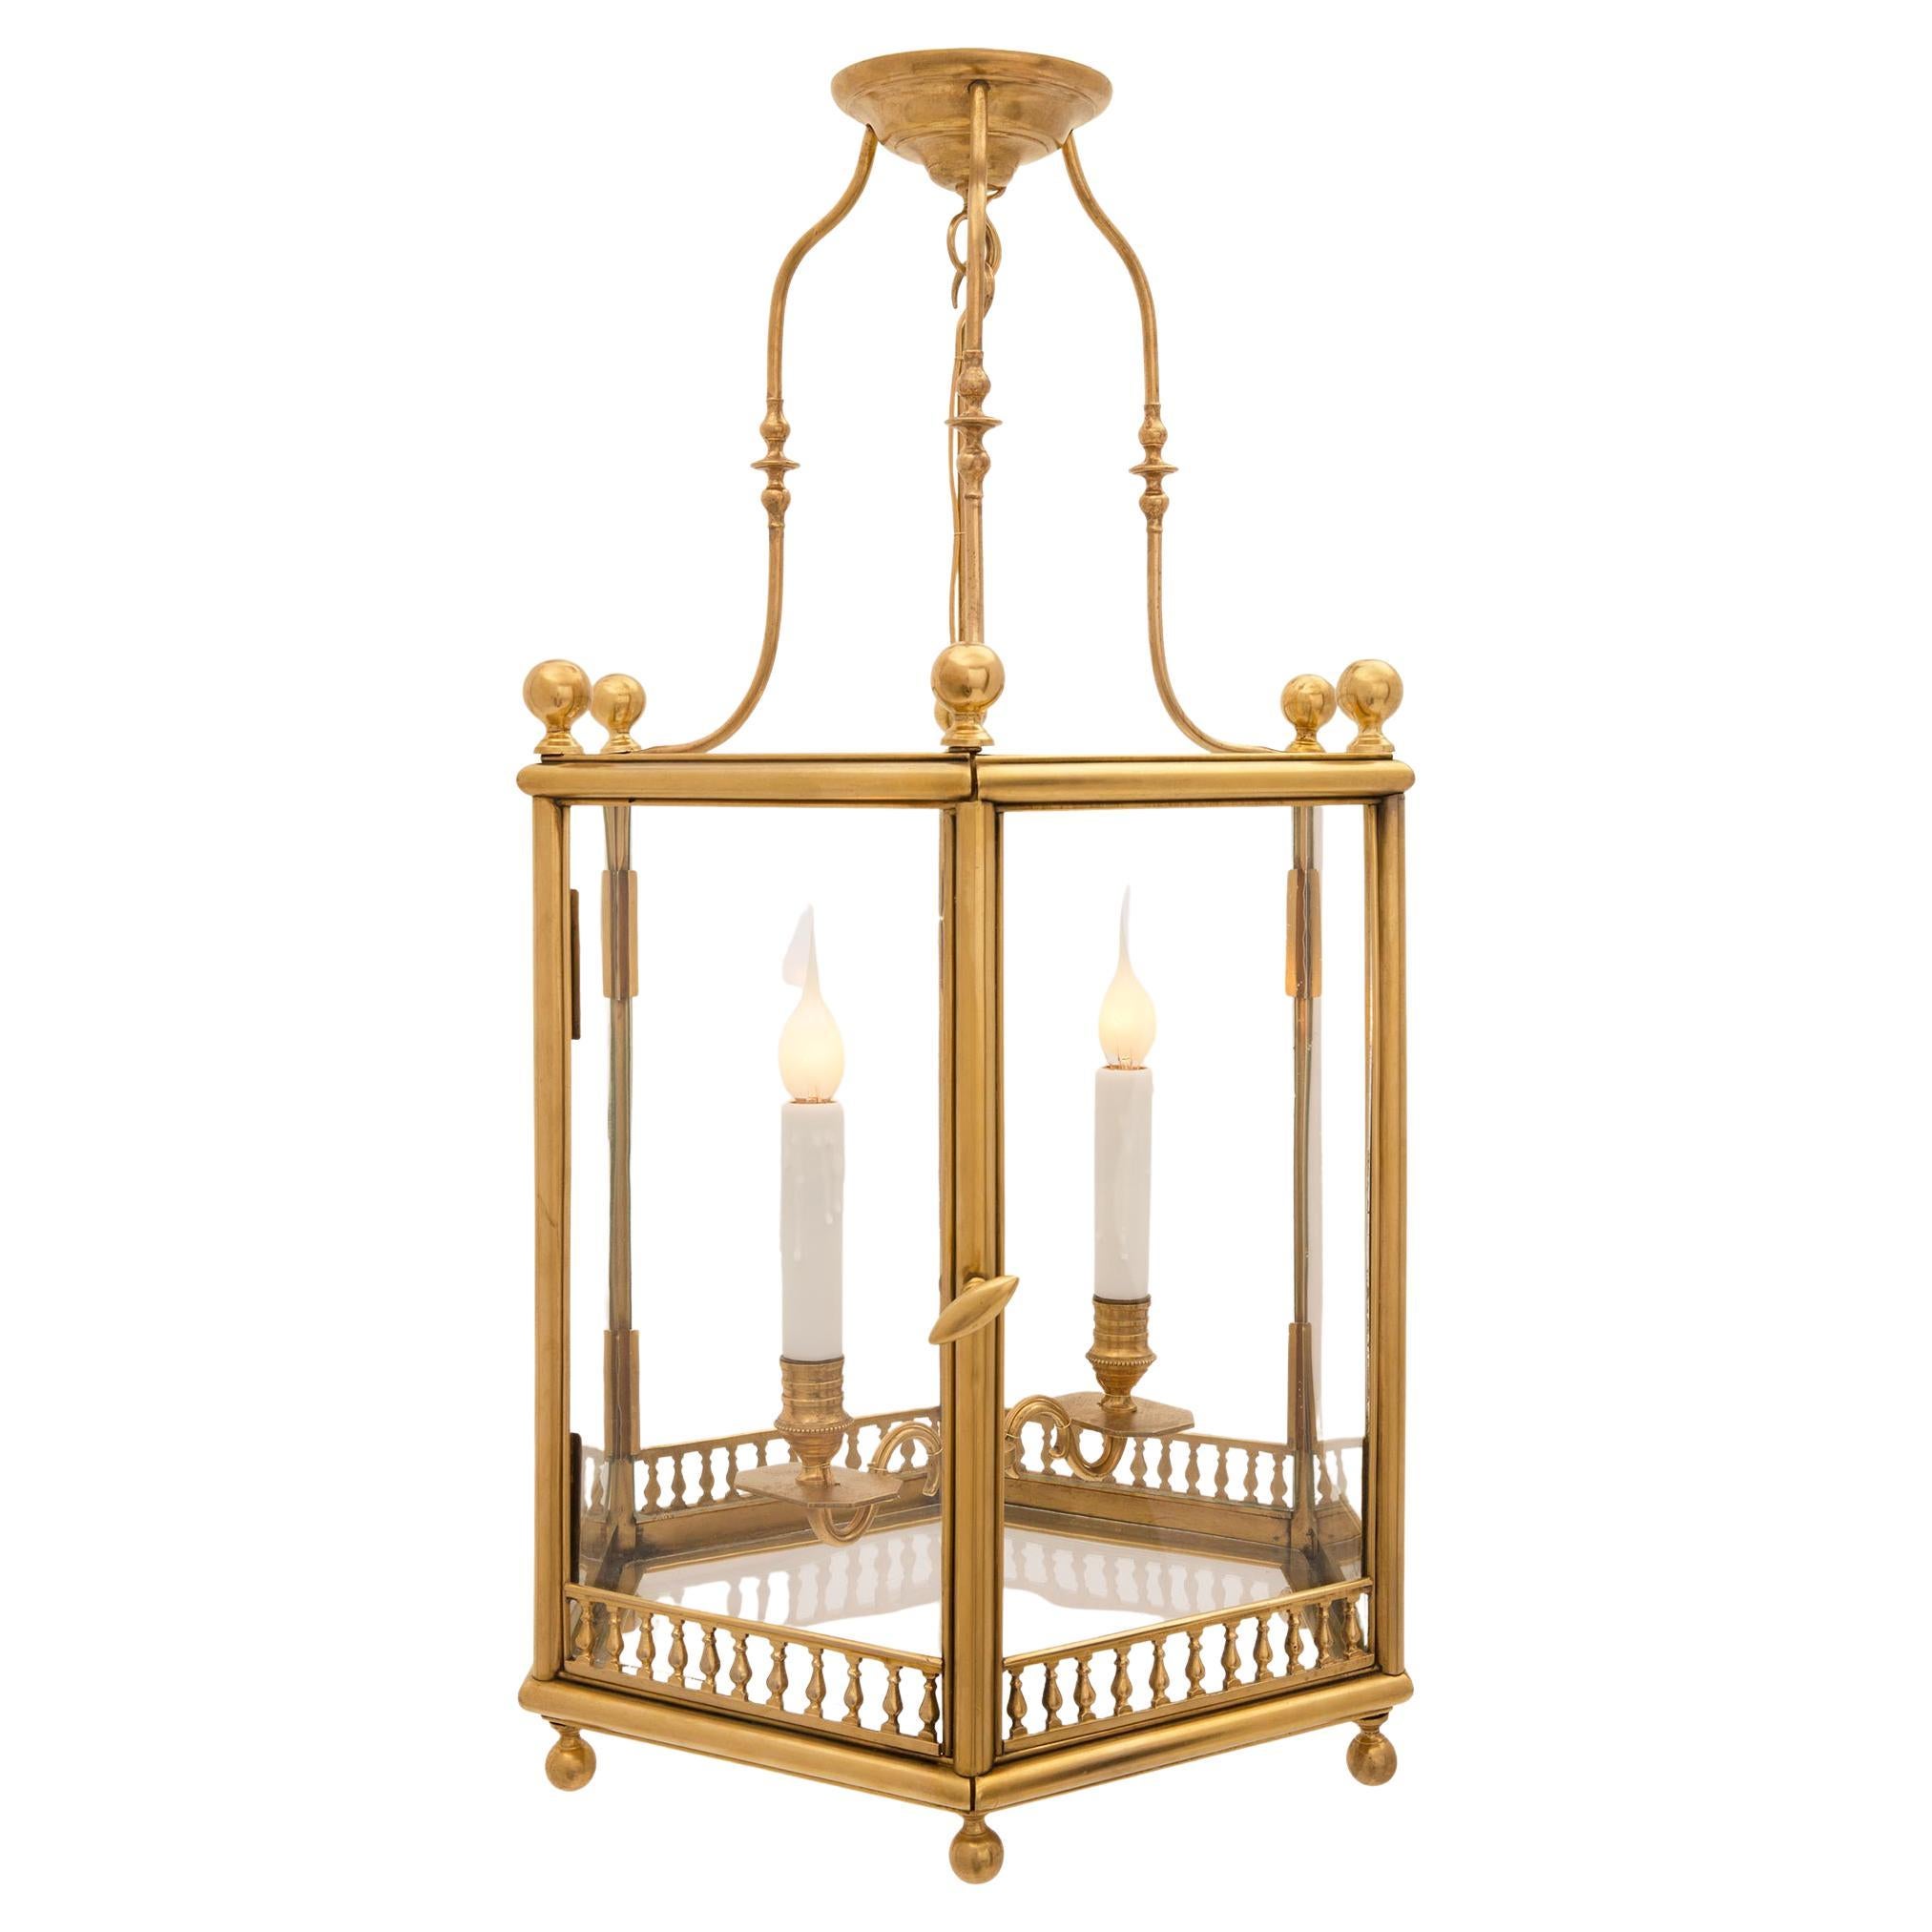 Lanterne française du 19ème siècle de style Louis XVI en bronze doré et verre